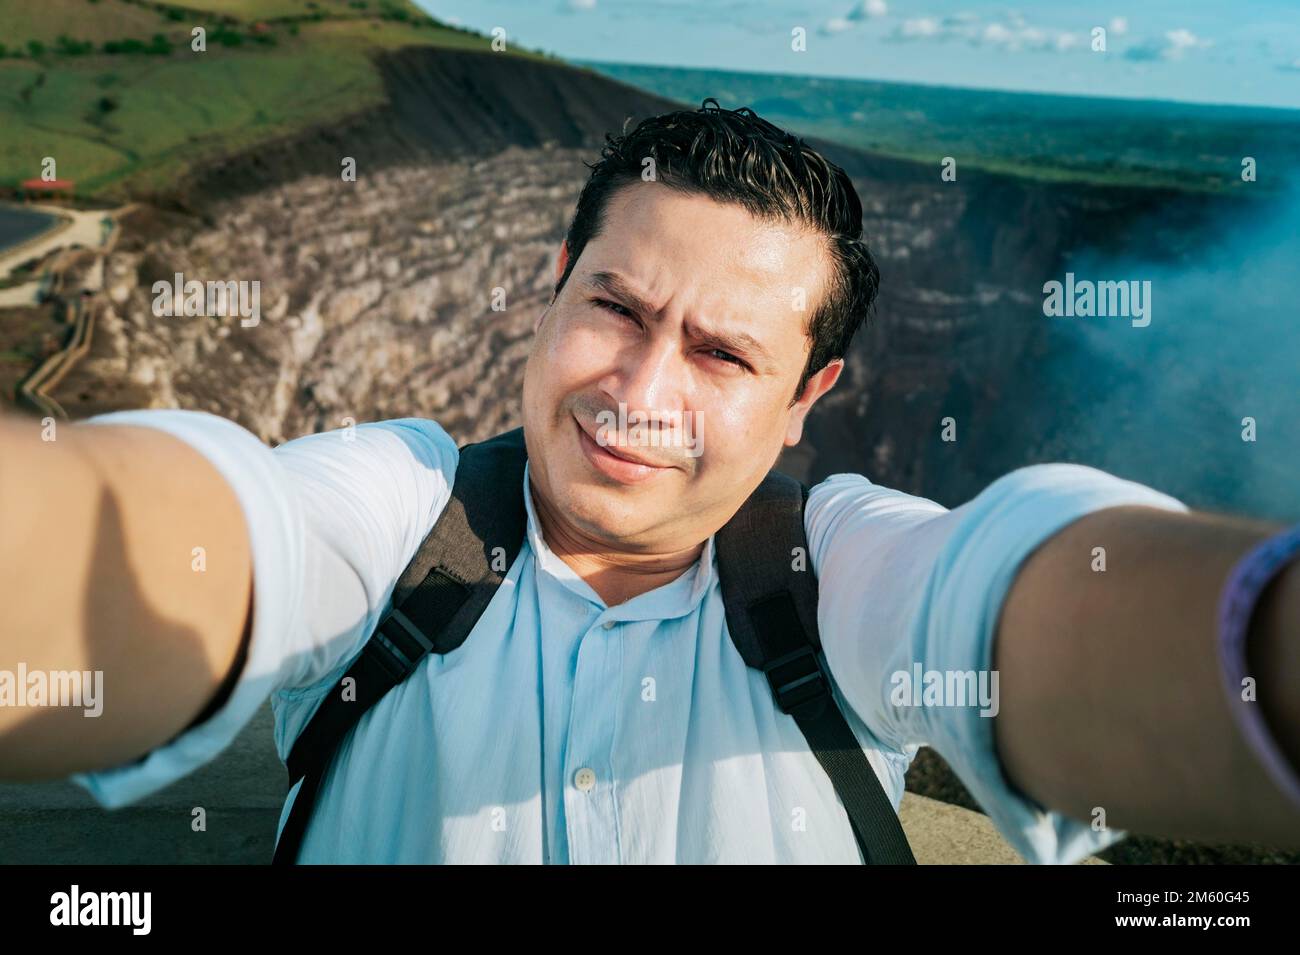 Les aventuriers prennent un selfie au point de vue. Gros plan d'une personne prenant un selfie d'aventure, touriste prenant un selfie à un point de vue. Beau Banque D'Images